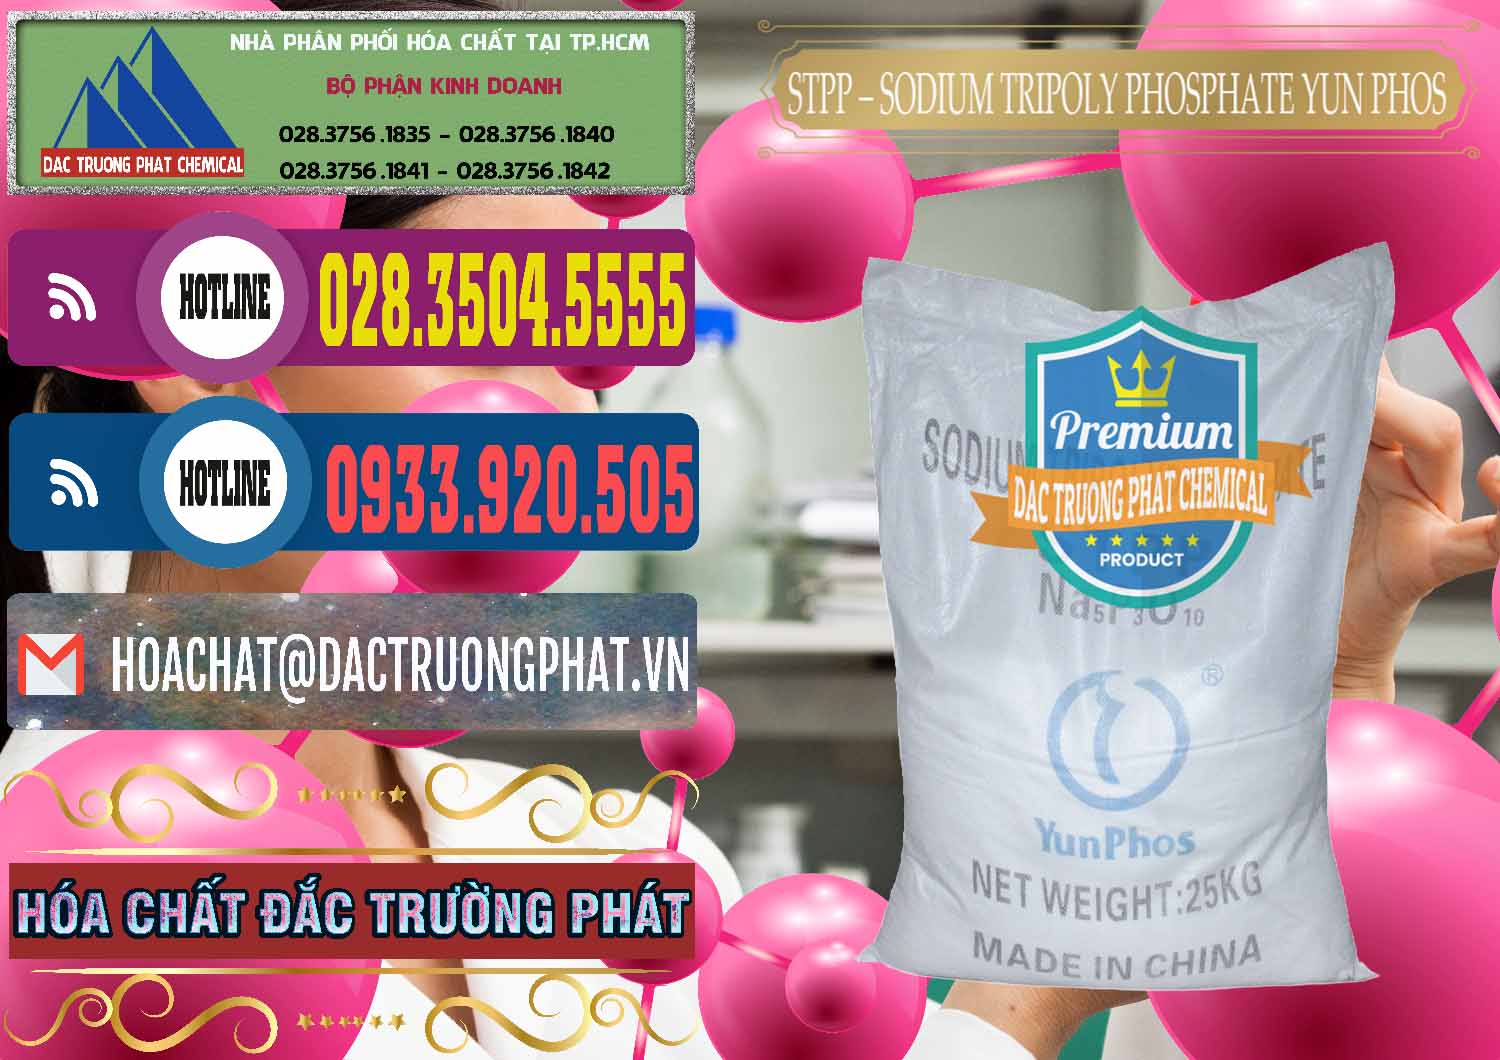 Chuyên bán và cung cấp Sodium Tripoly Phosphate - STPP Yun Phos Trung Quốc China - 0153 - Công ty cung ứng & phân phối hóa chất tại TP.HCM - muabanhoachat.com.vn